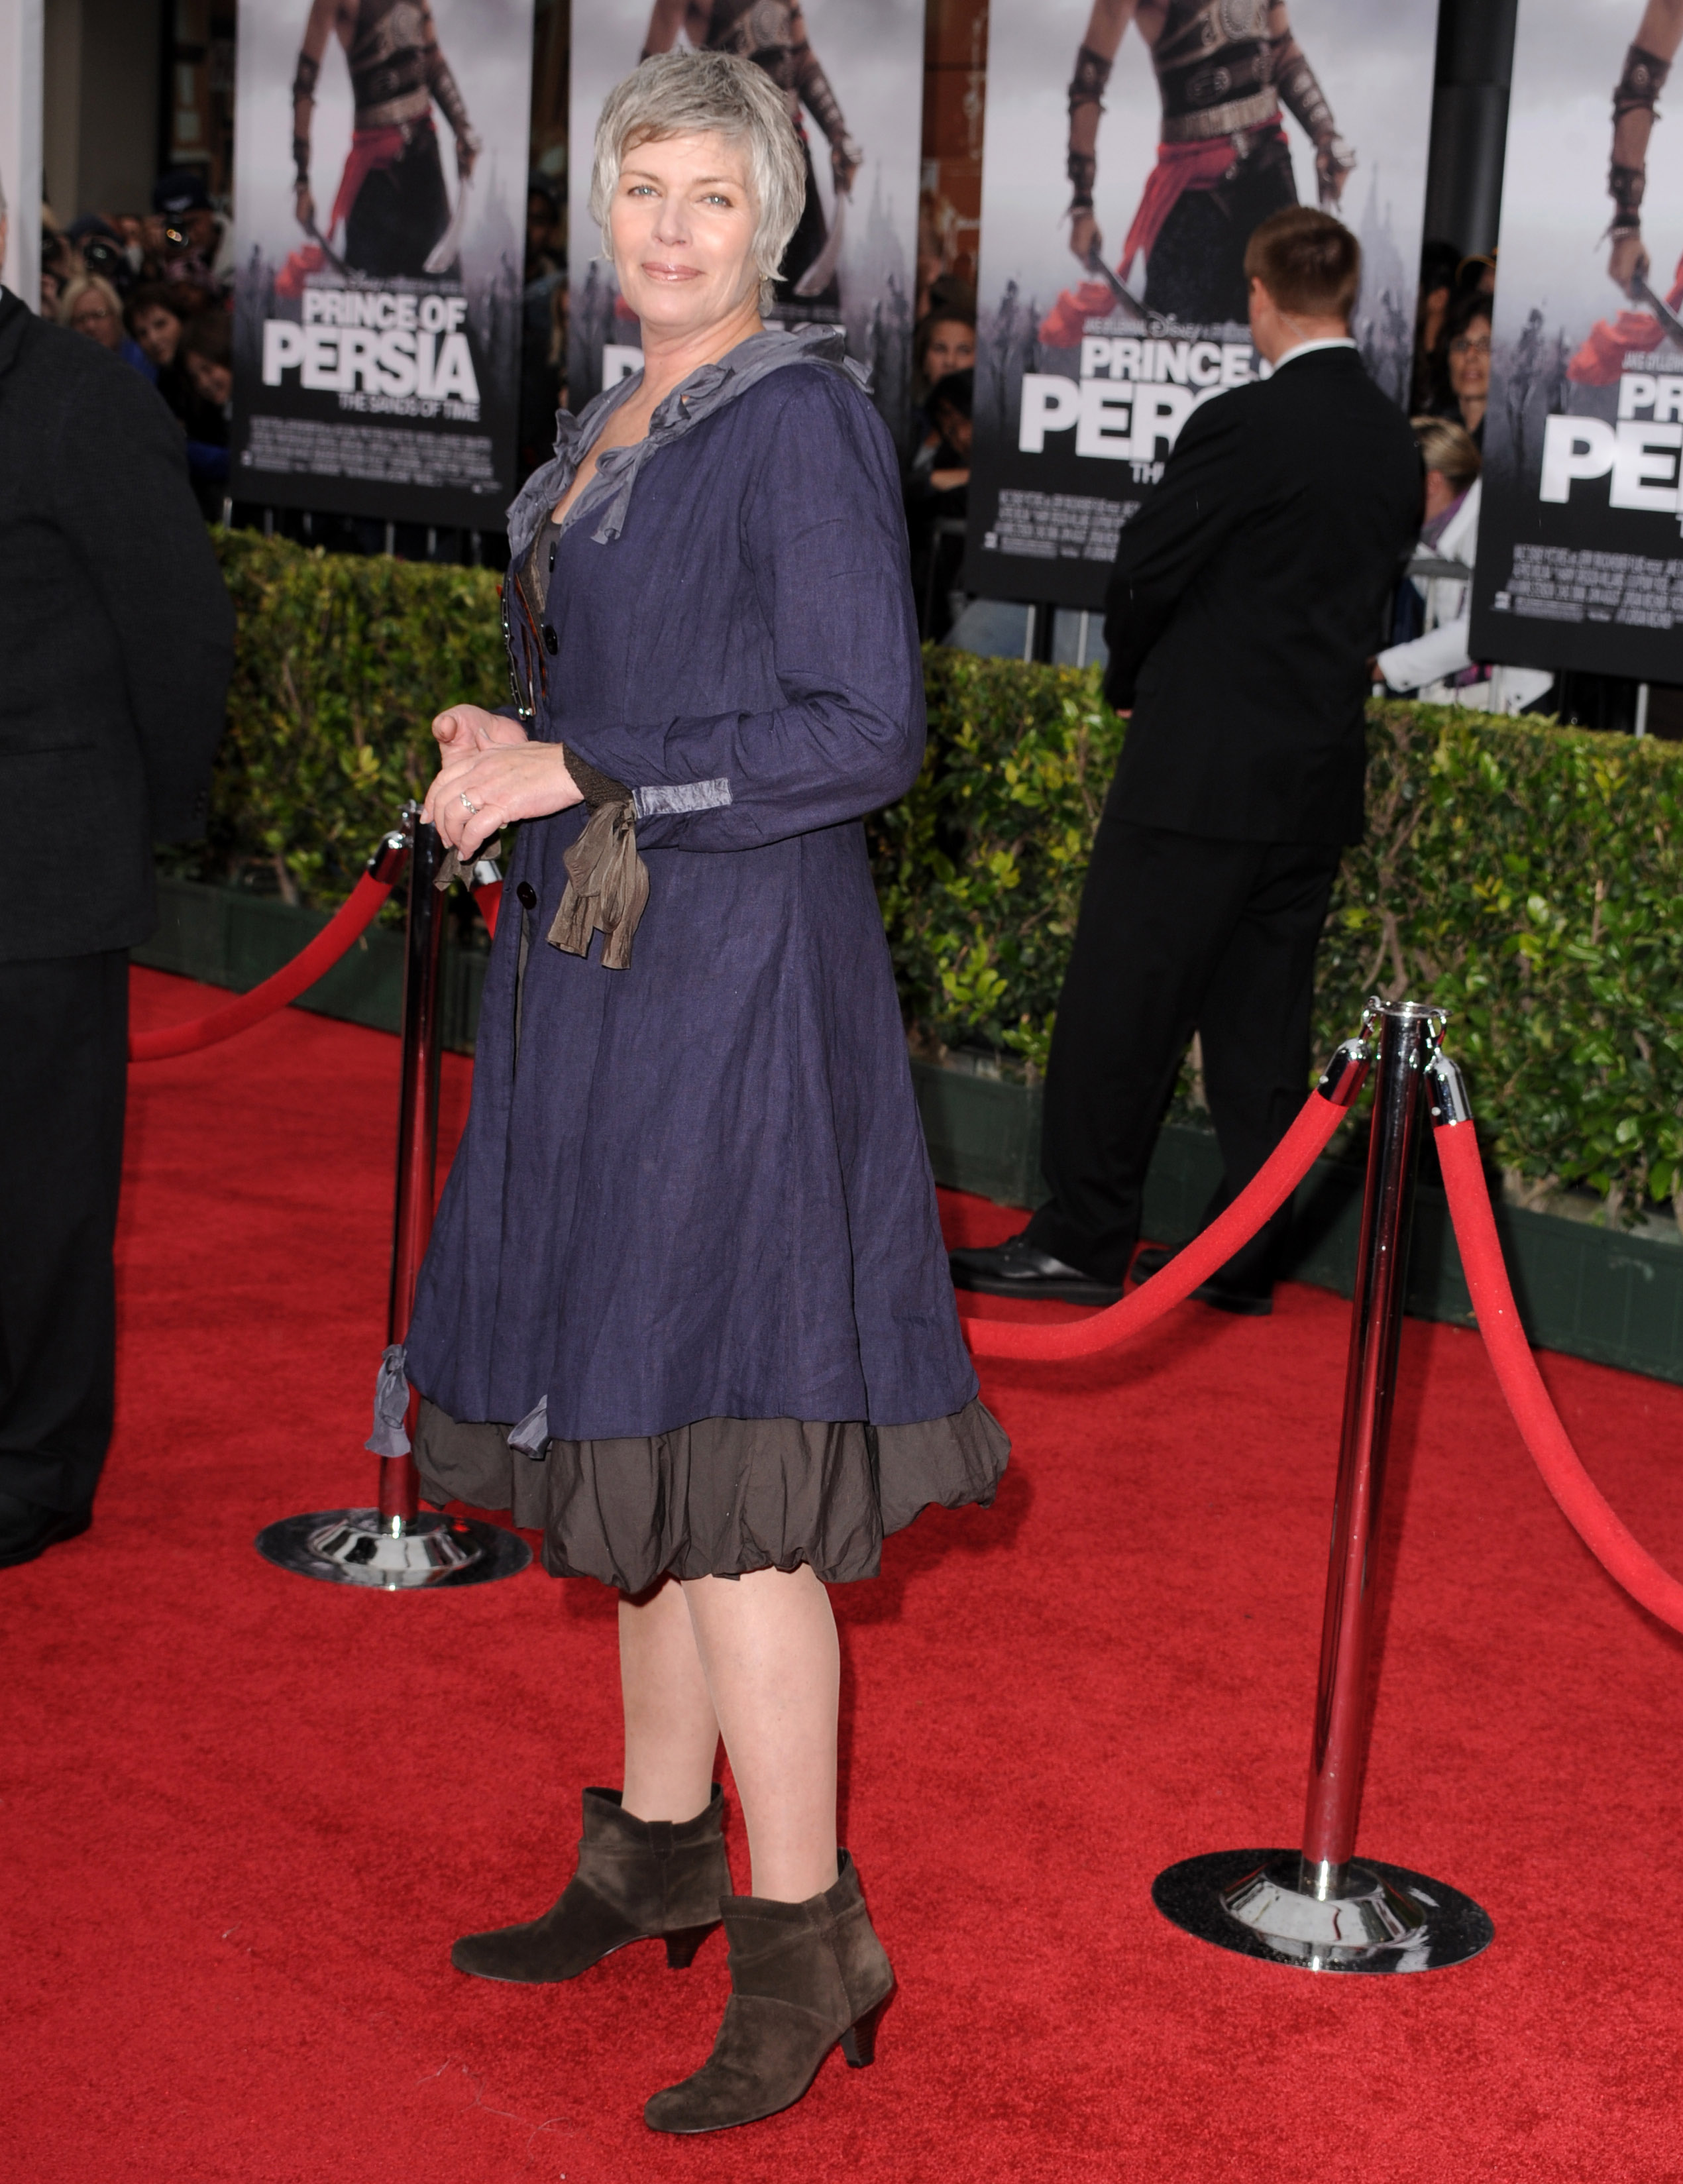 Kelly McGillis asiste al estreno en Los Ángeles de "Prince of Persia: Las Arenas del Tiempo" el 17 de mayo de 2010 en Hollywood, California | Foto: Getty Images